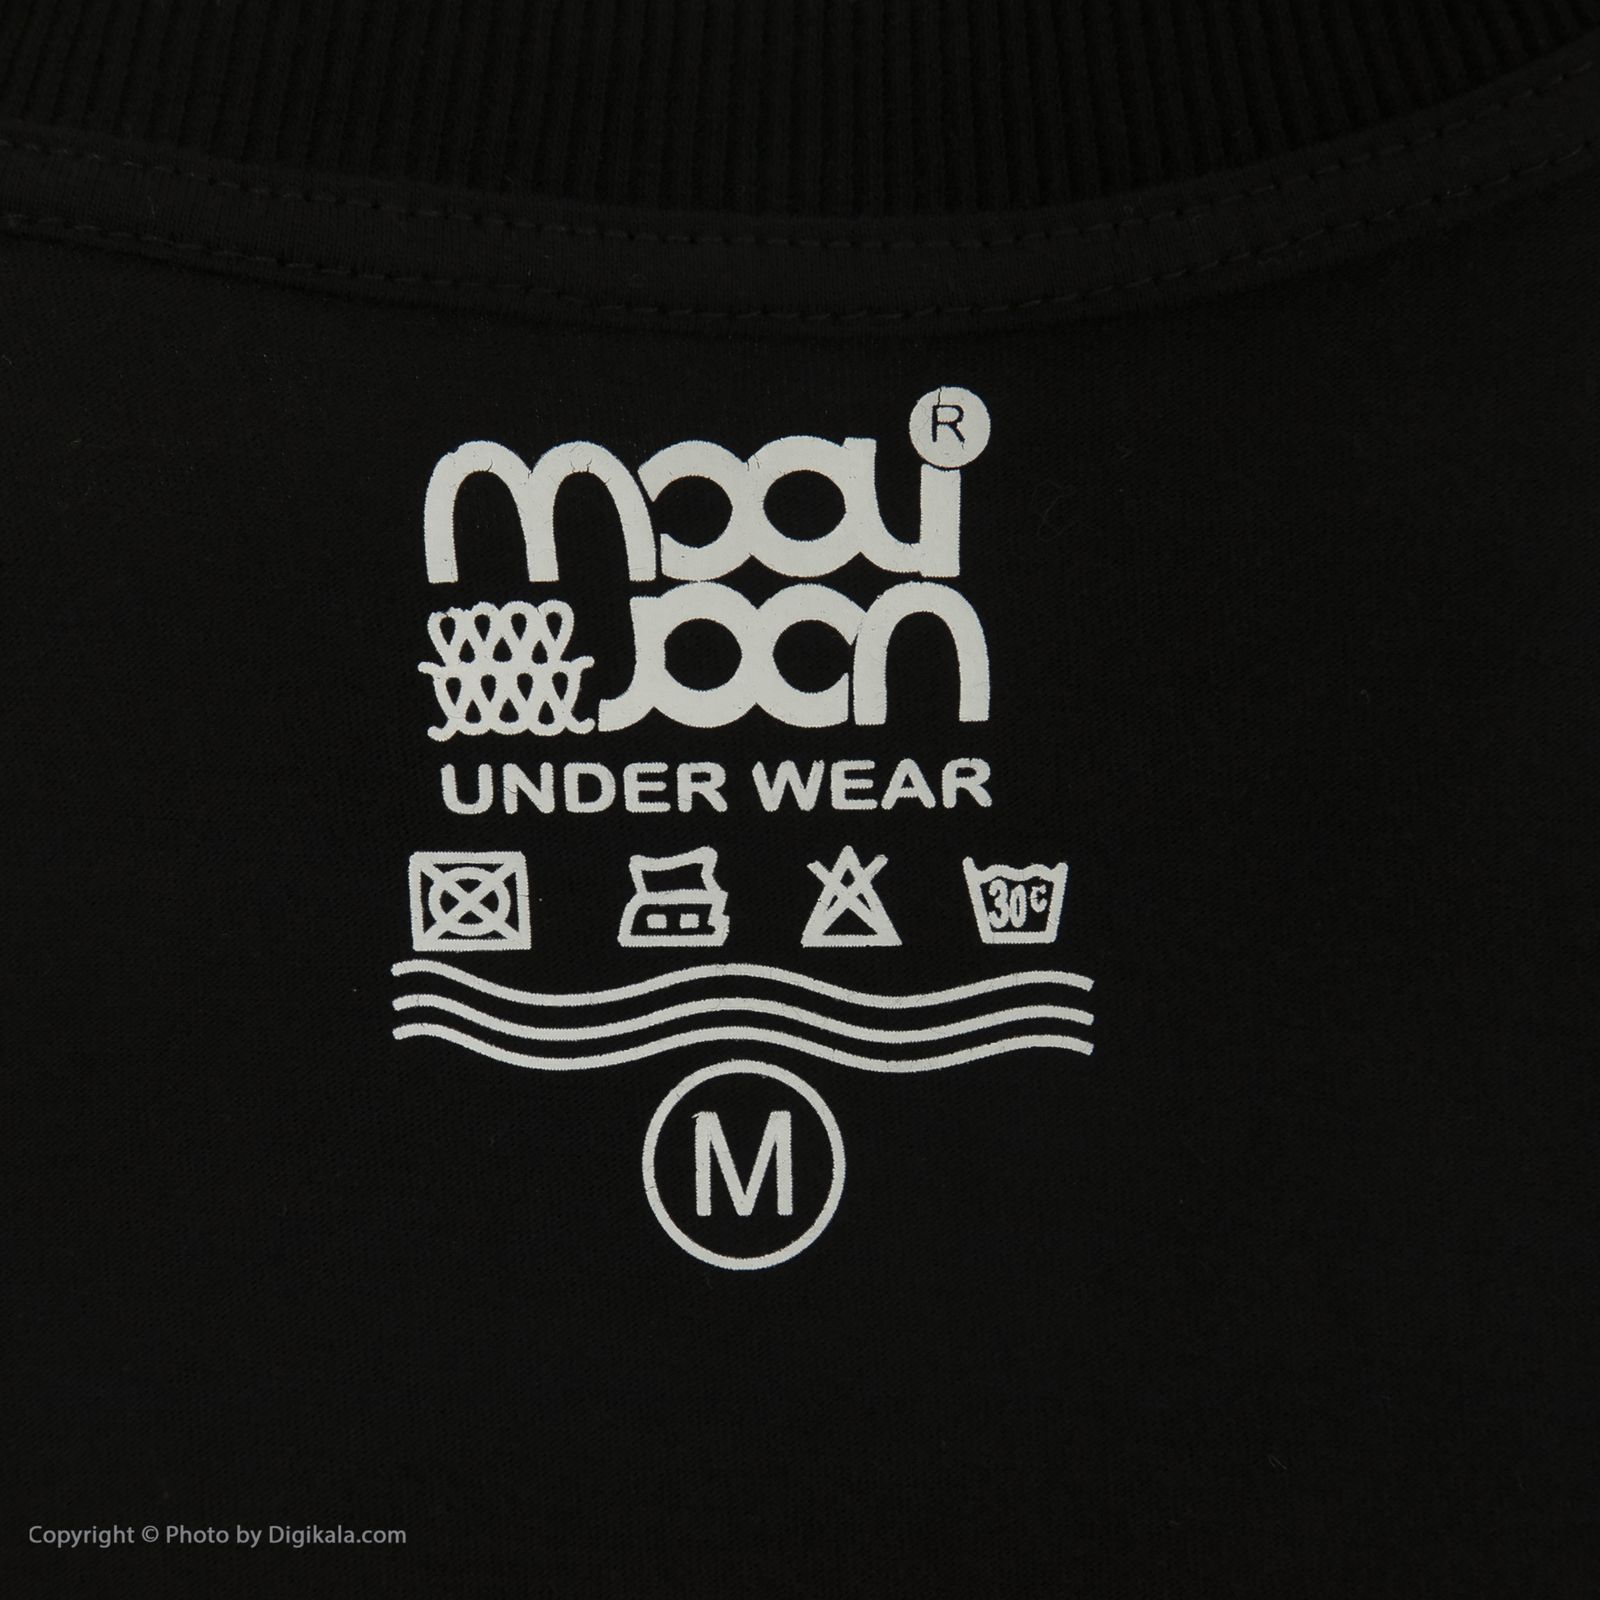 ست تی شرت و شلوار راحتی مردانه مولی جون مدل 2431102-7899 -  - 12